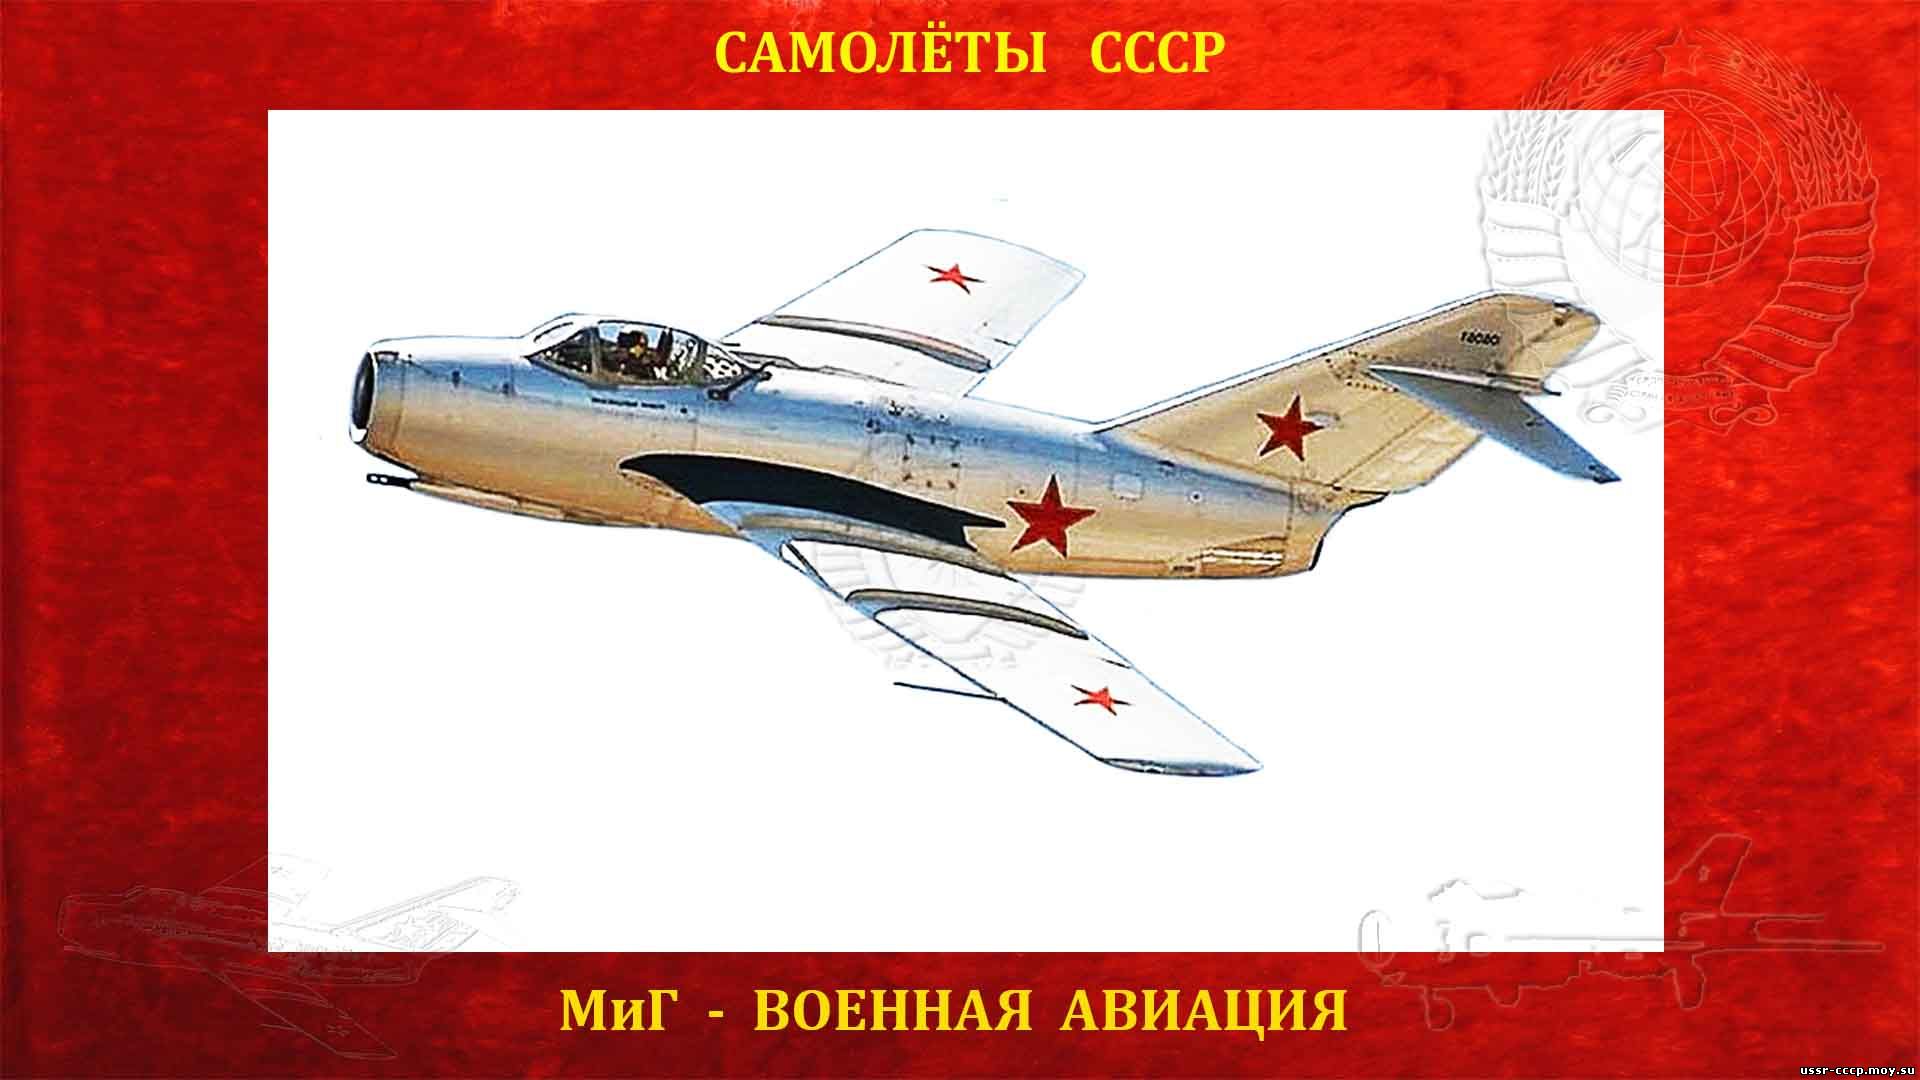 МиГ-15 - Советский реактивный истребитель (1947)